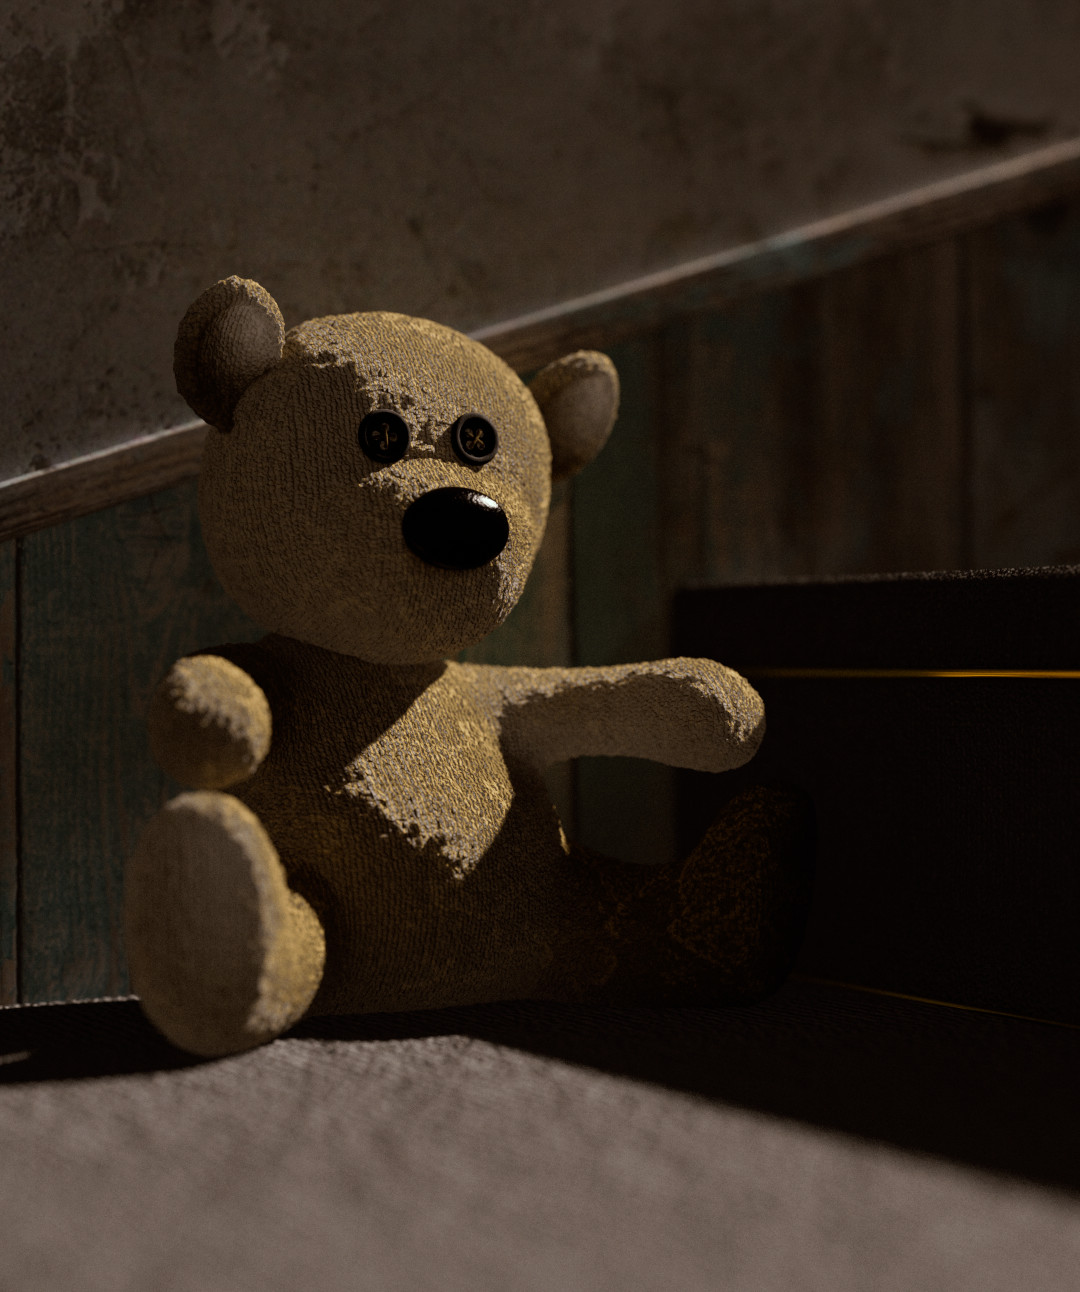 Study of a Teddy Bear